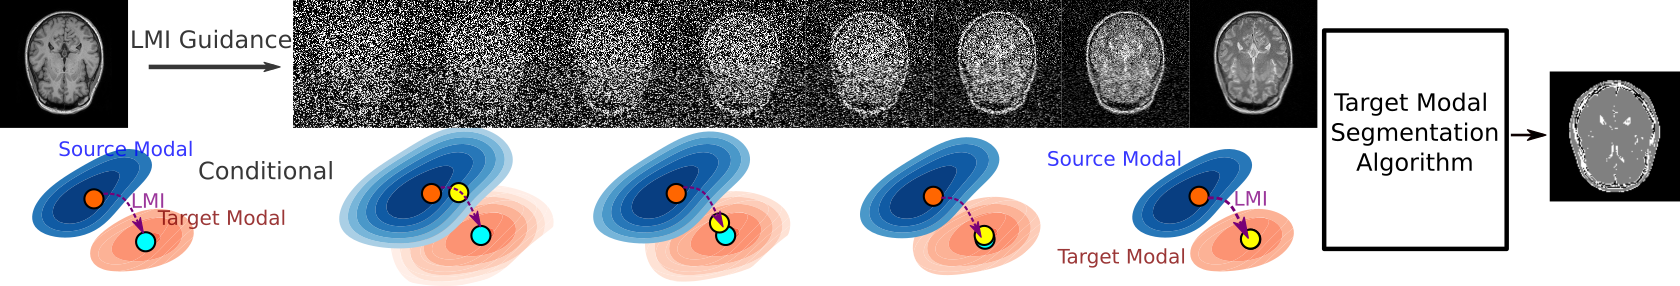 Diffusion based Zero-shot Medical Image-to-Image Translation for Cross Modality Segmentation